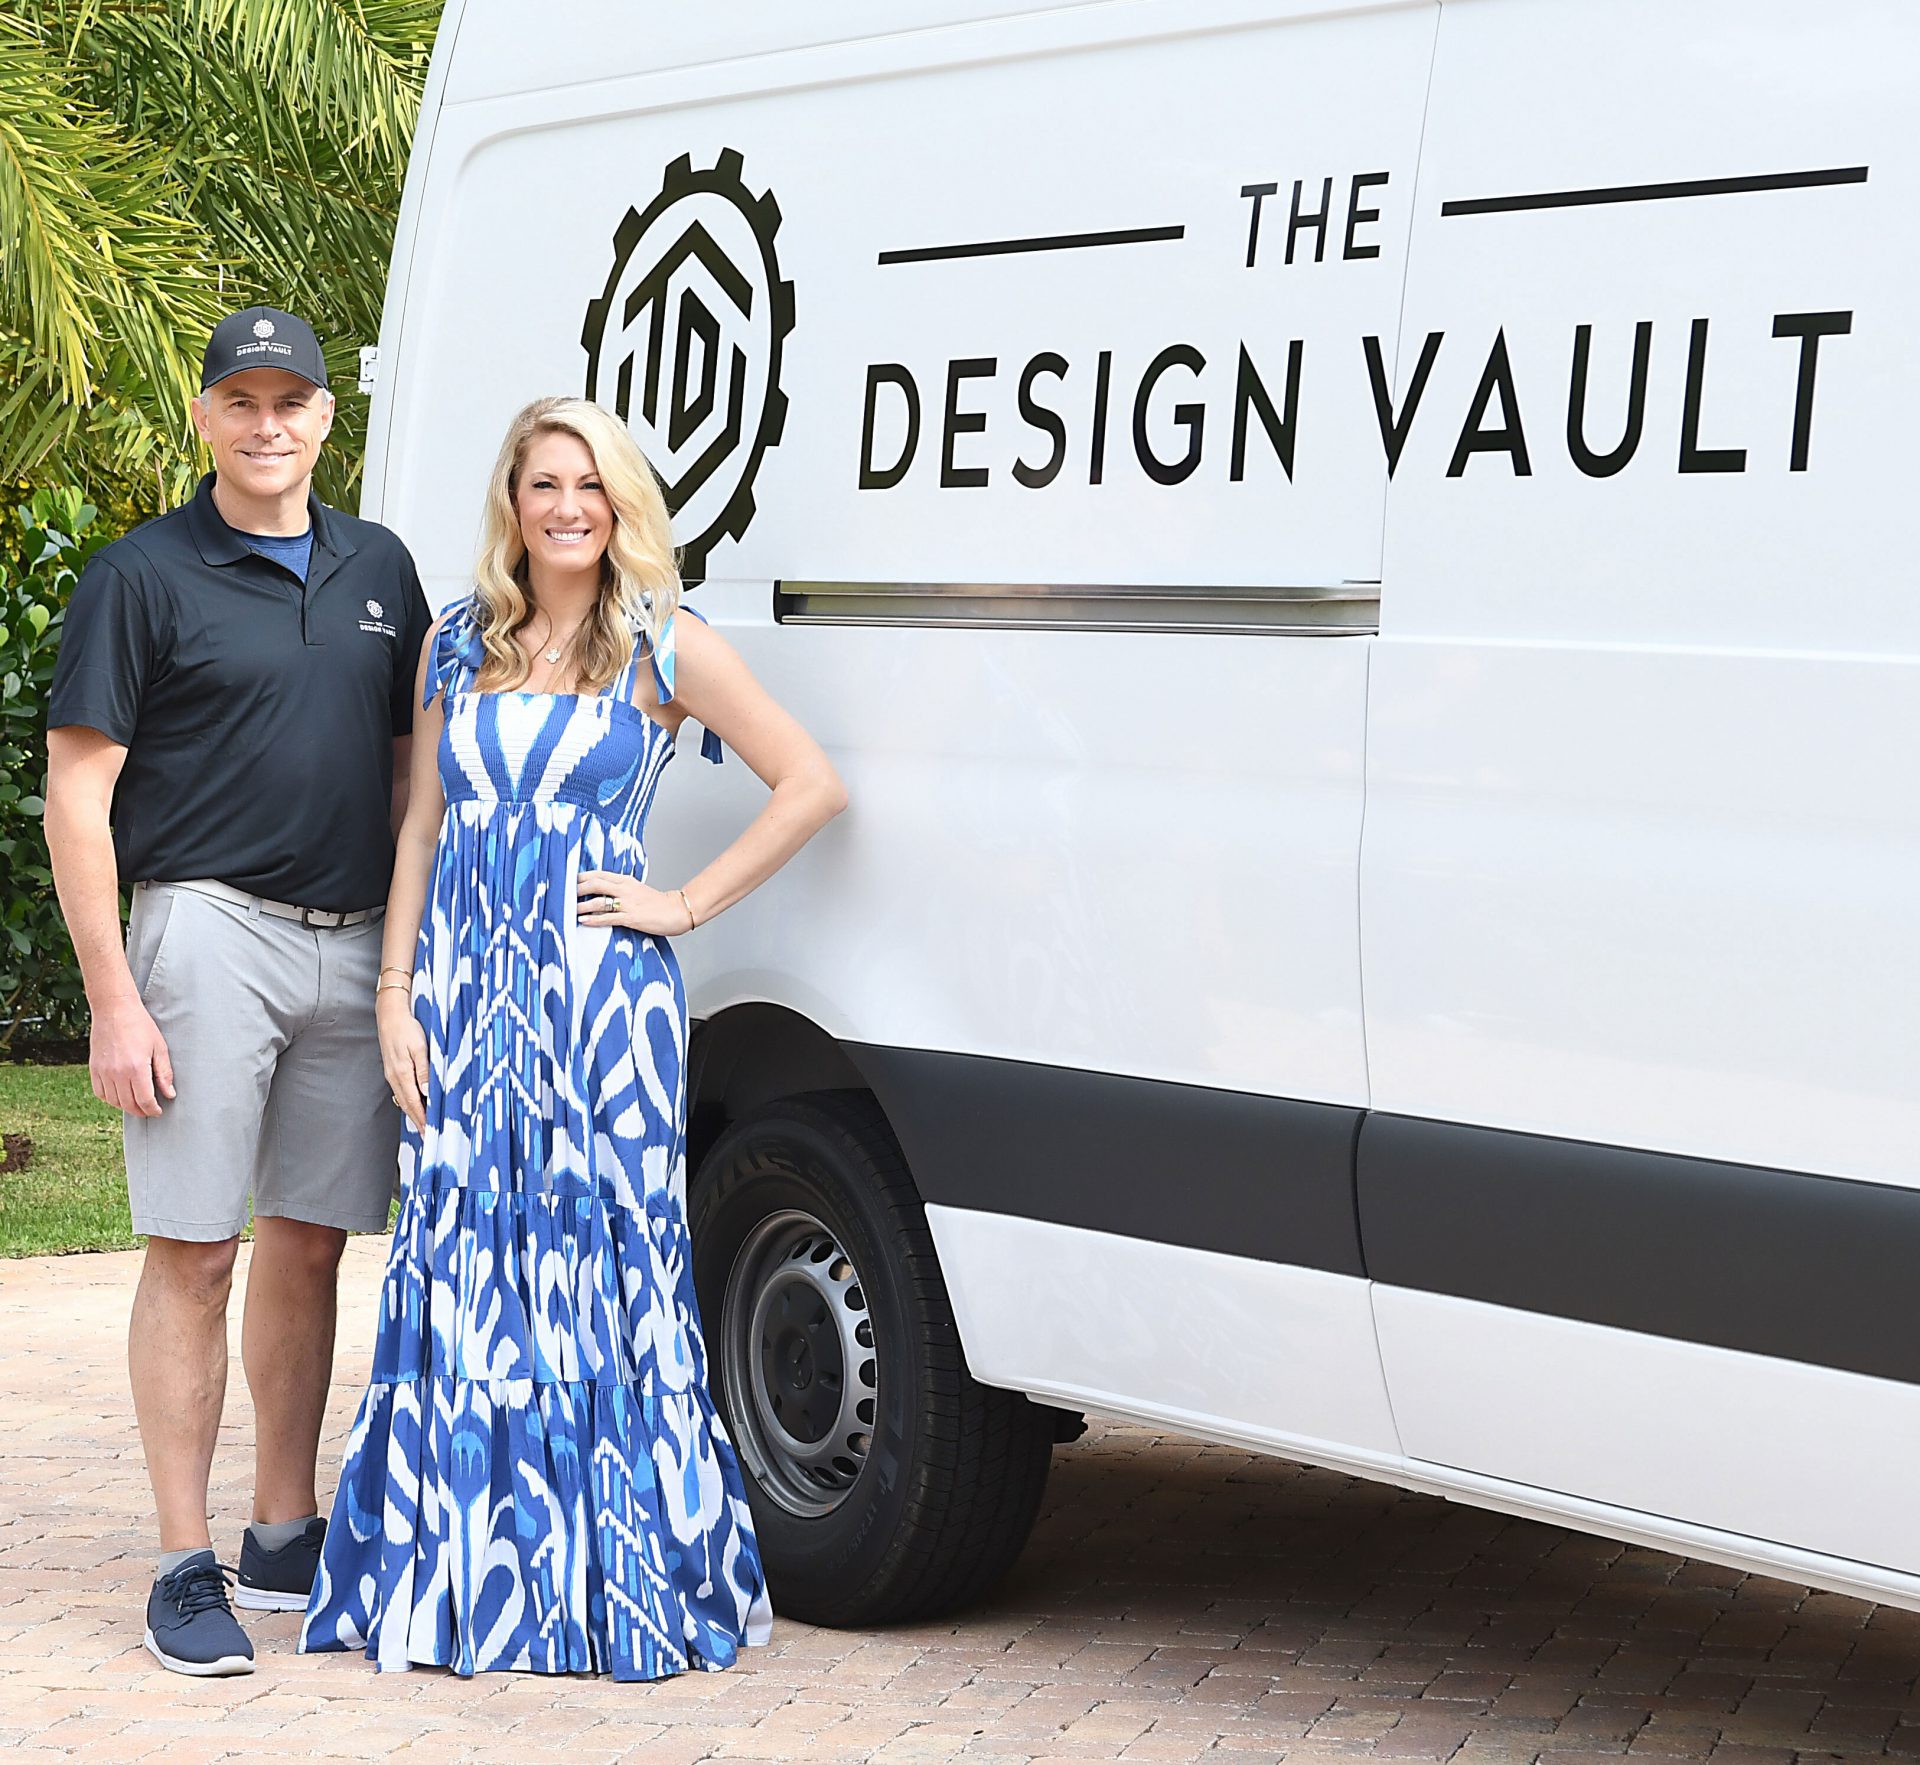 The Design Vault Van